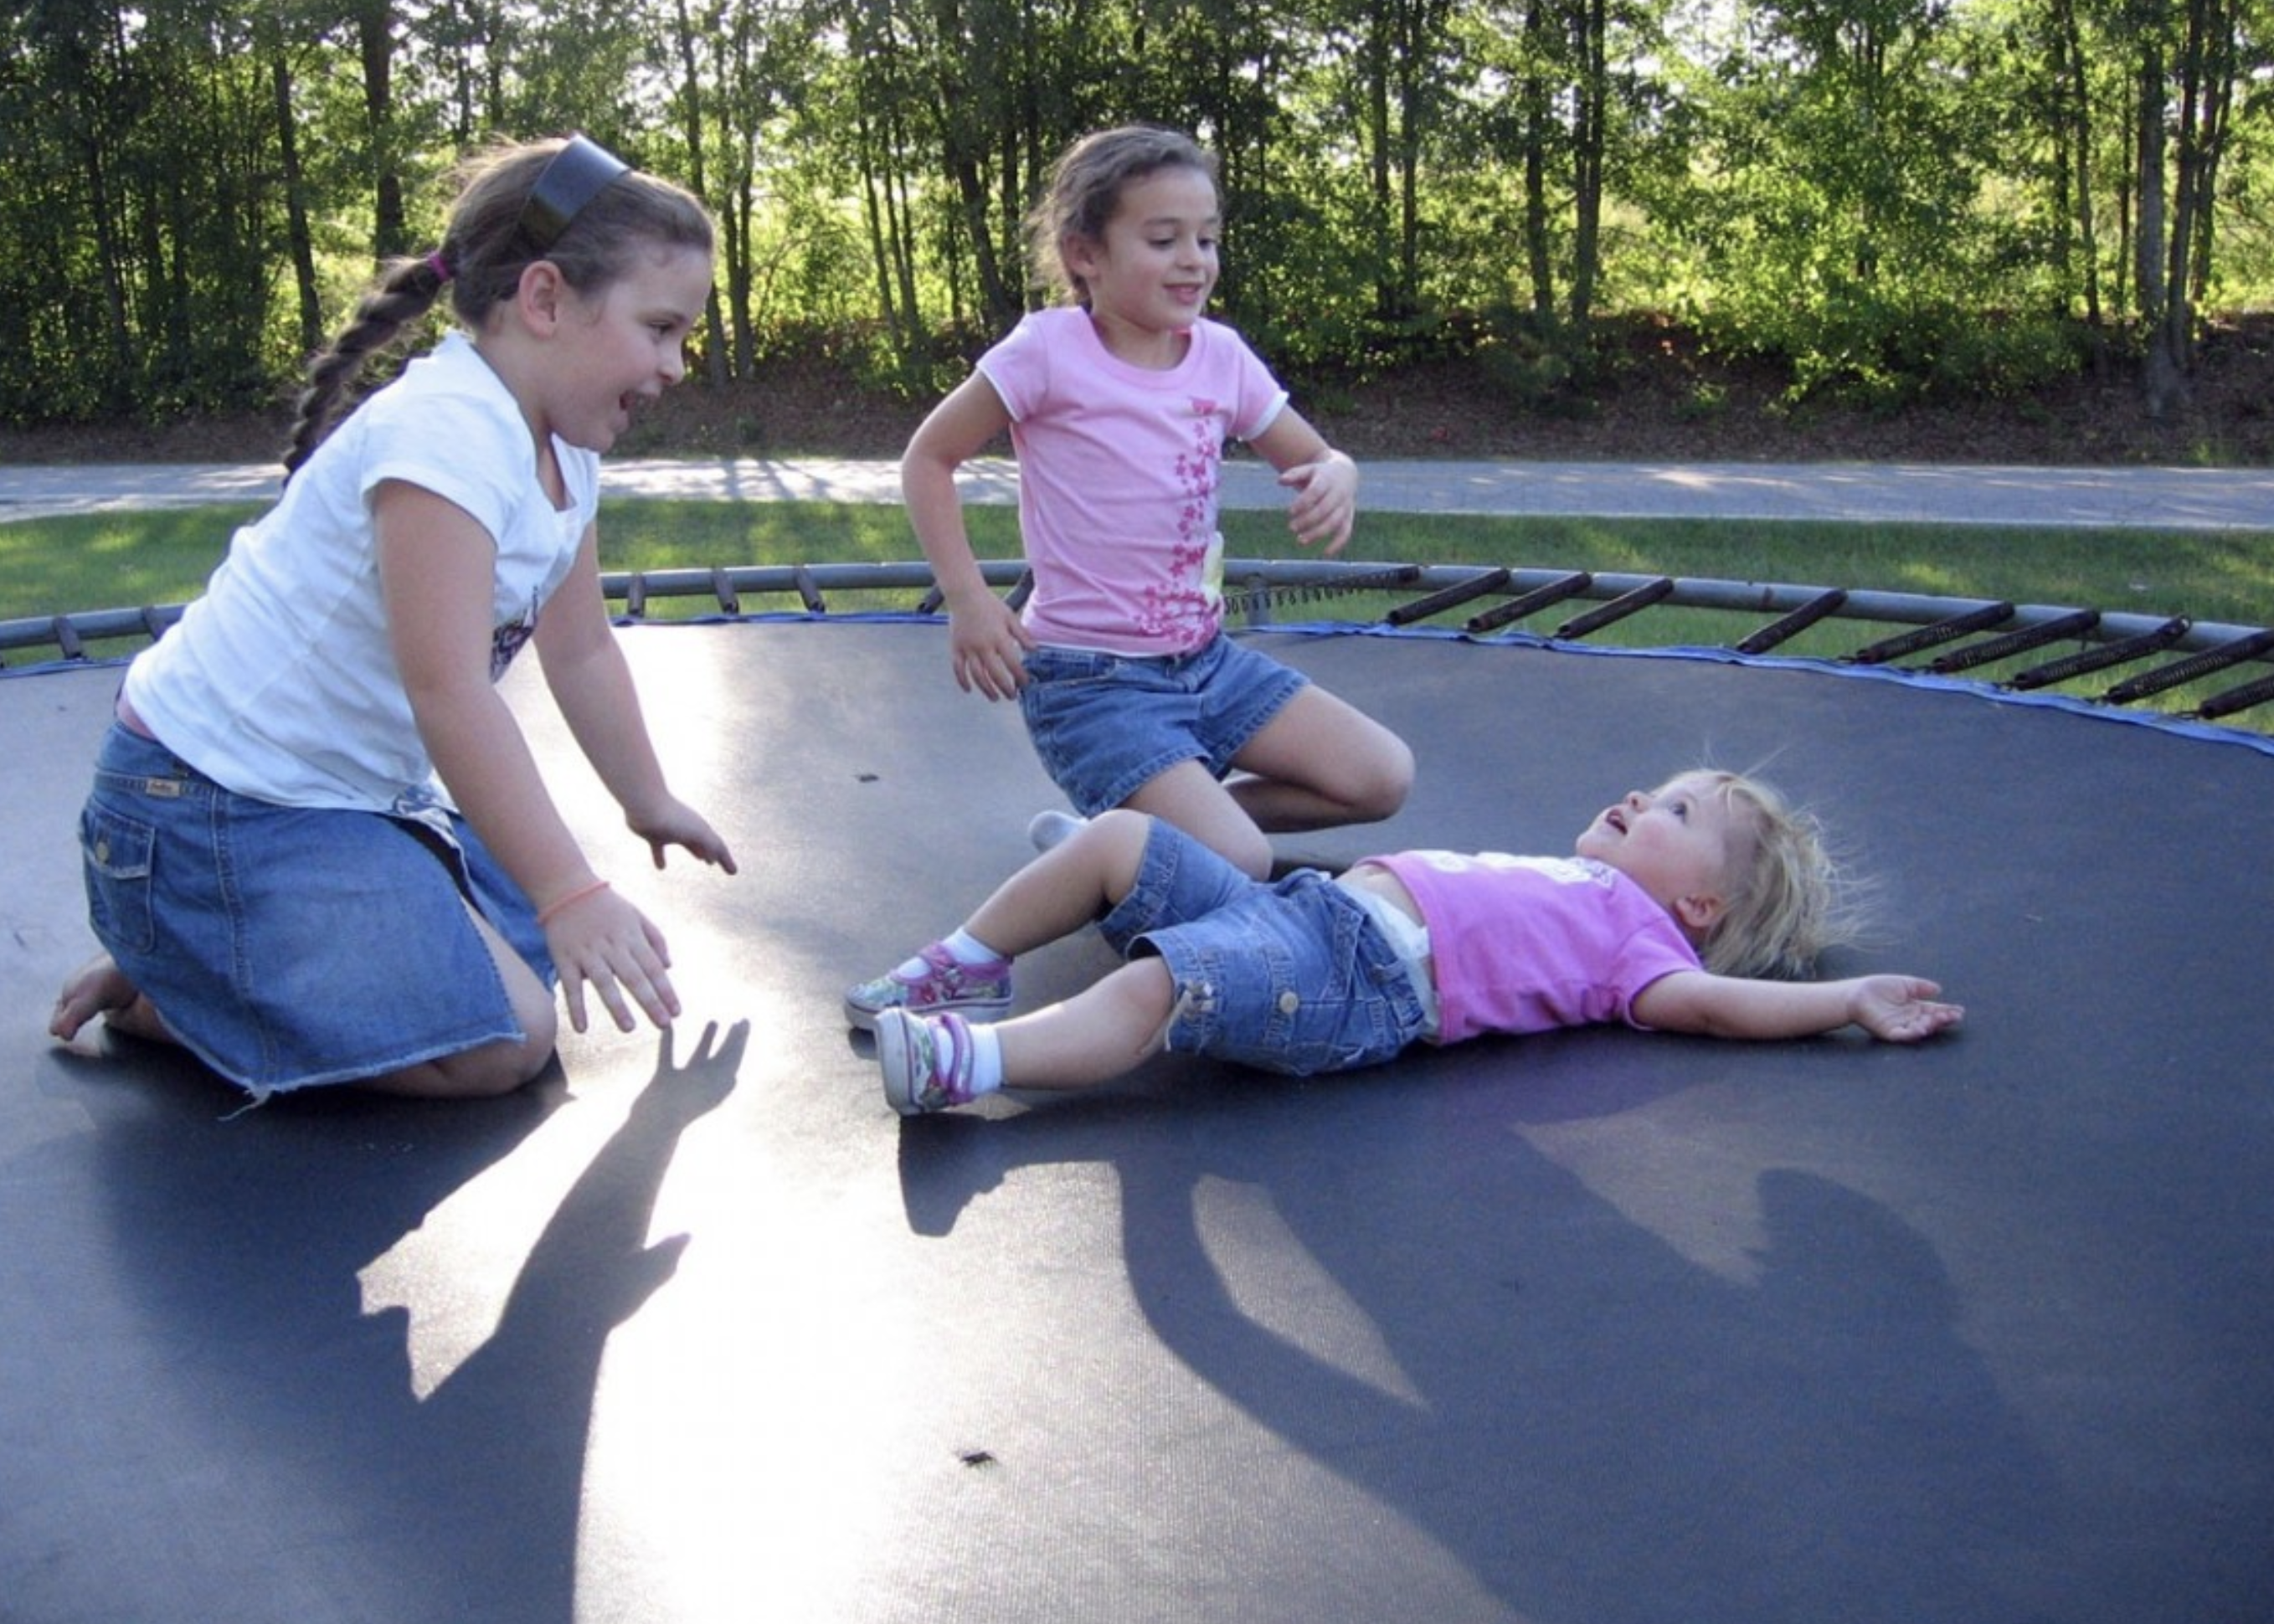 Children on a trampoline